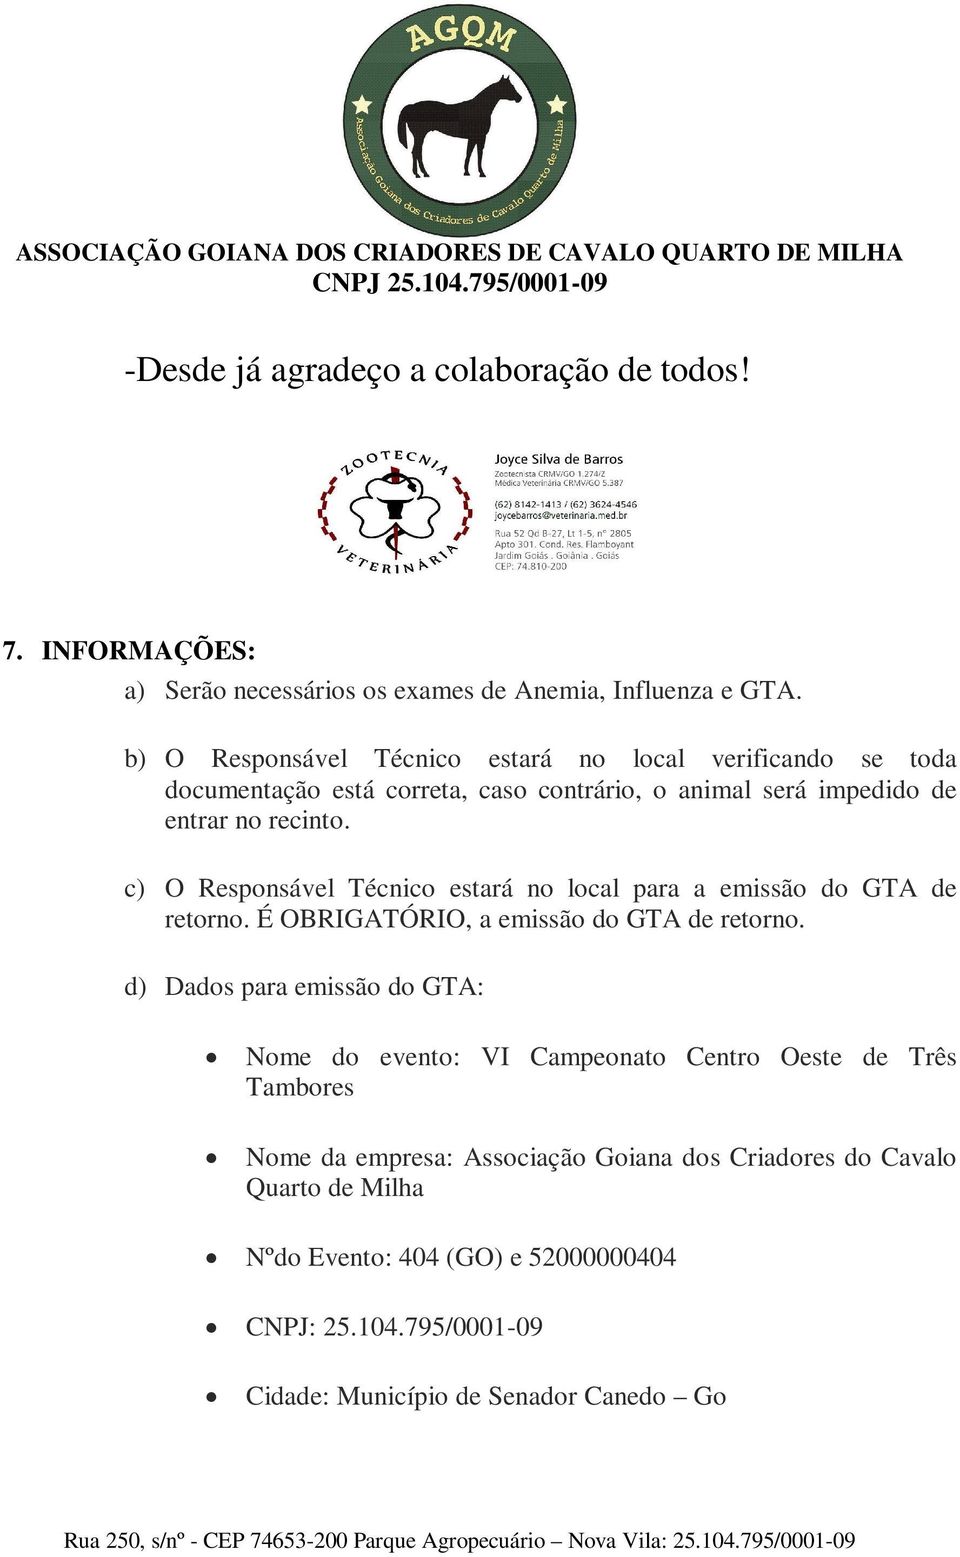 c) O Responsável Técnico estará no local para a emissão do GTA de retorno. É OBRIGATÓRIO, a emissão do GTA de retorno.